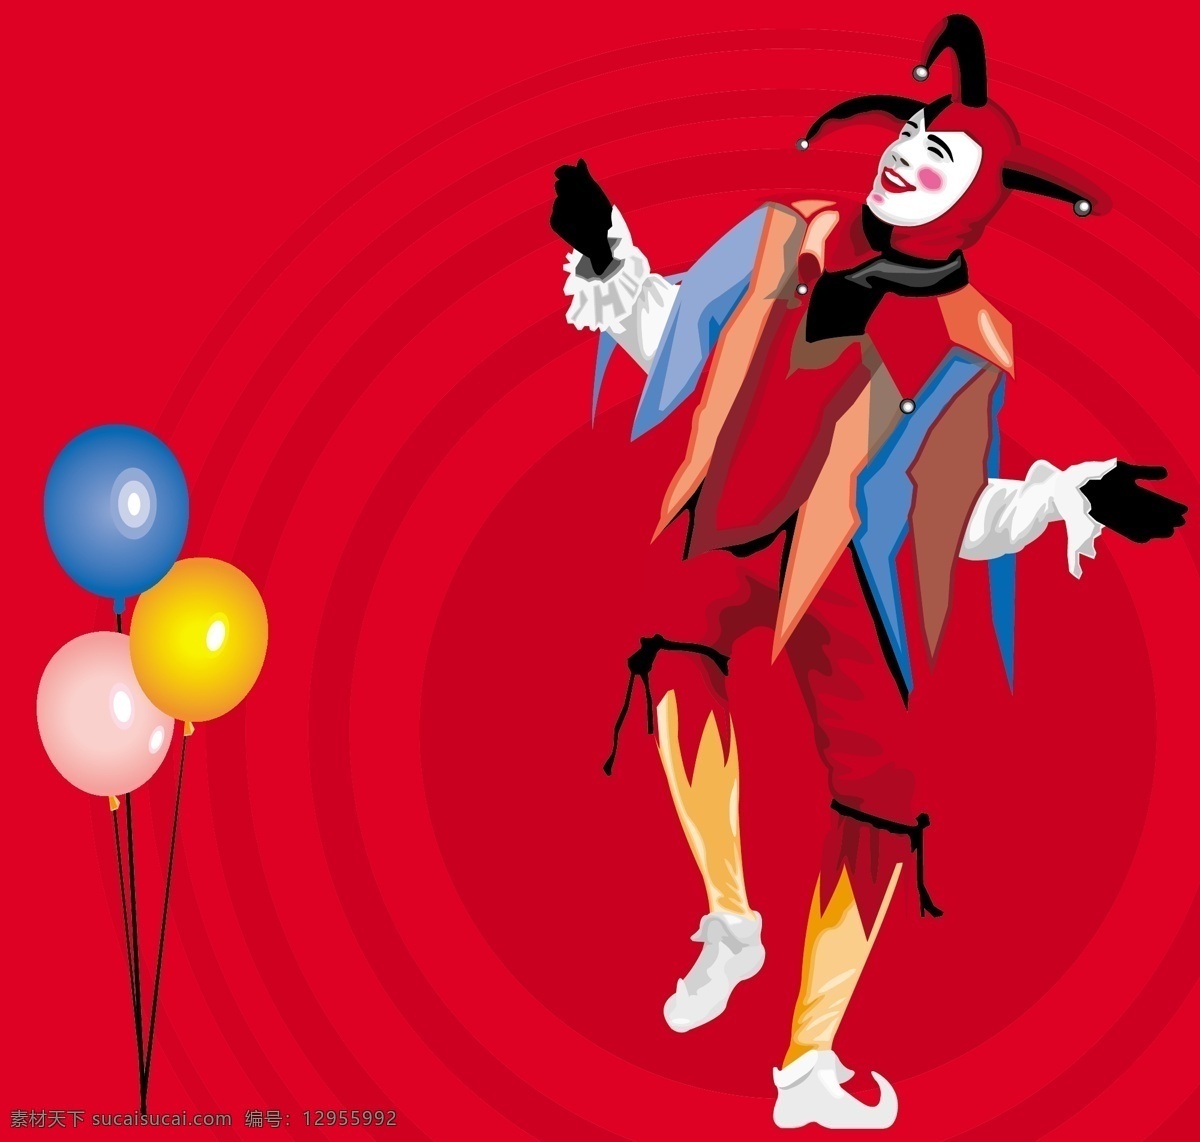 气球 小丑 矢量 欢乐 节庆 其他矢量图 矢量素材 矢量图 卡通 头像 卡通壁纸 桌面 家居装饰素材 壁纸墙画壁纸